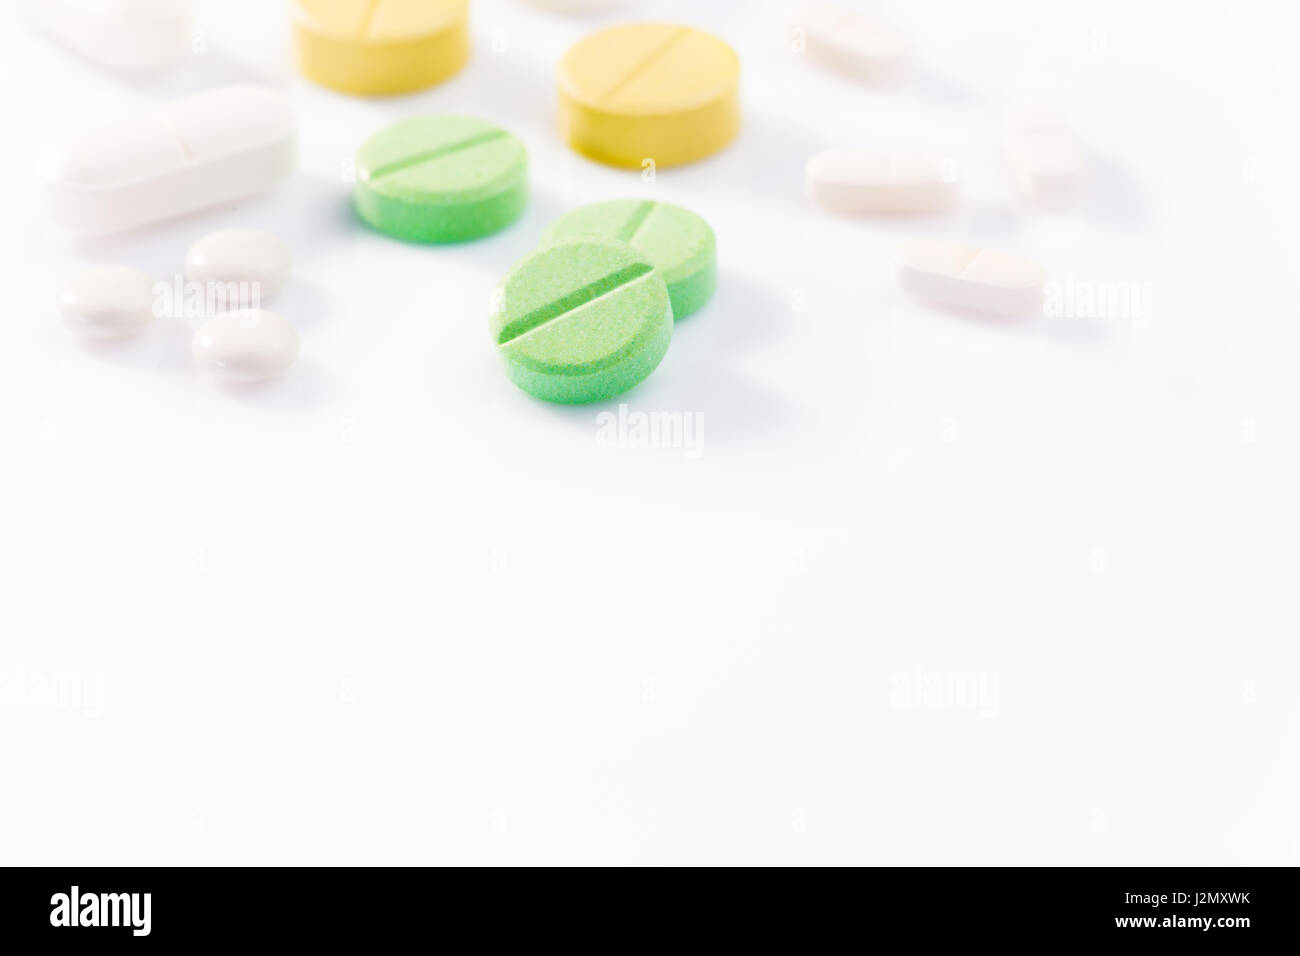 Medizin Pillen in verschiedenen Formen, Farben und Größen auf weißem Hintergrund mit selektiven Fokus auf die vordere grüne Pille Unschärfe Hintergrund, hart und niedrig ein Stockfoto